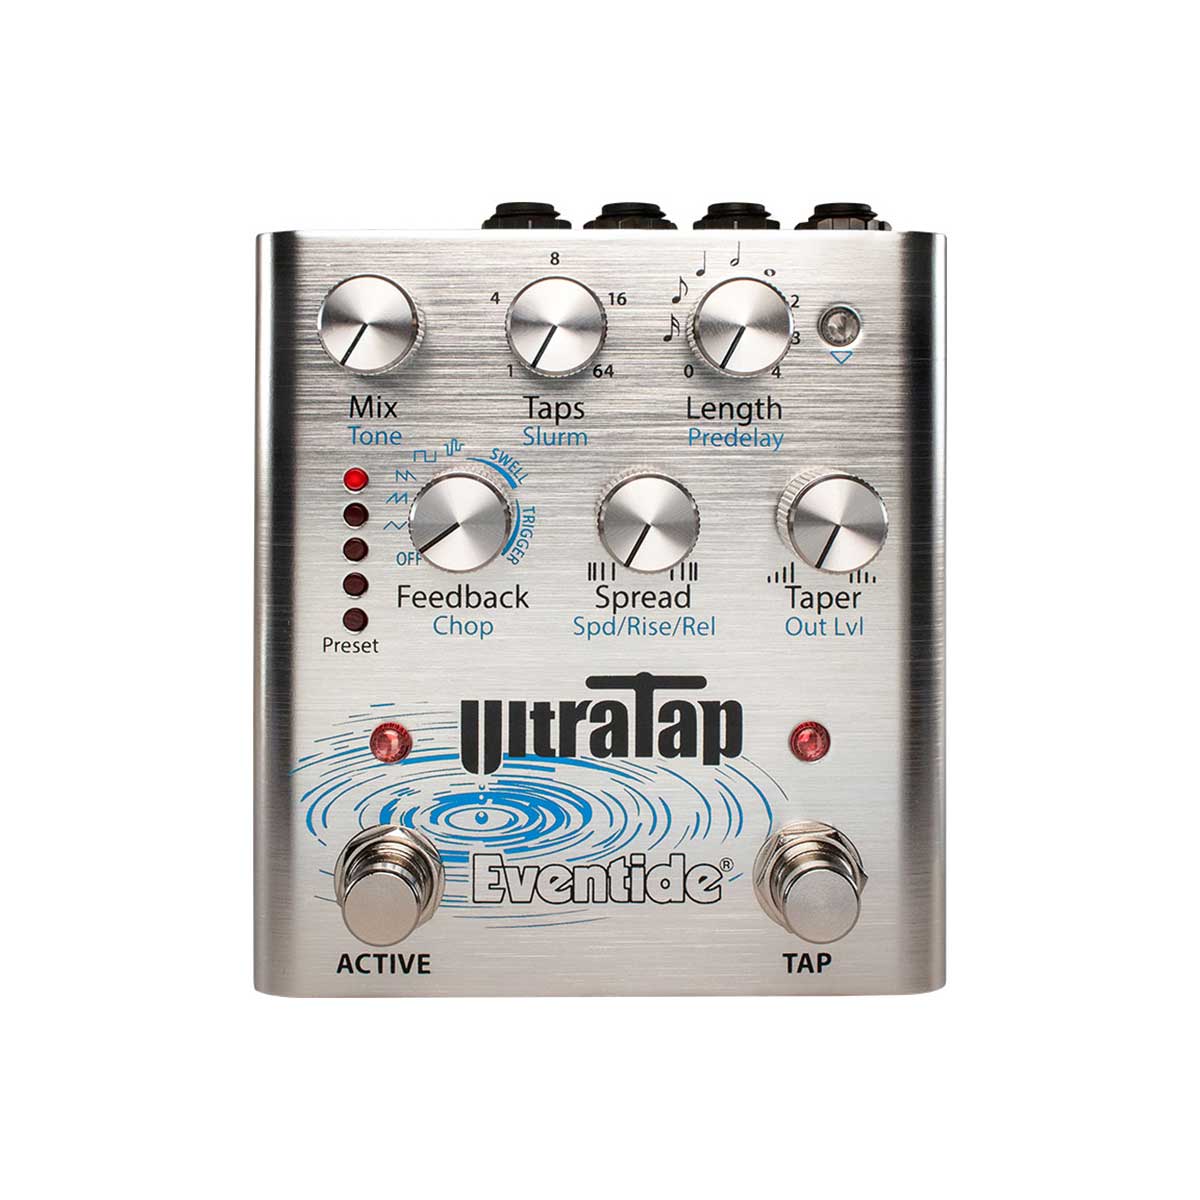 Eventide Ultratap multi-tap effect pedal